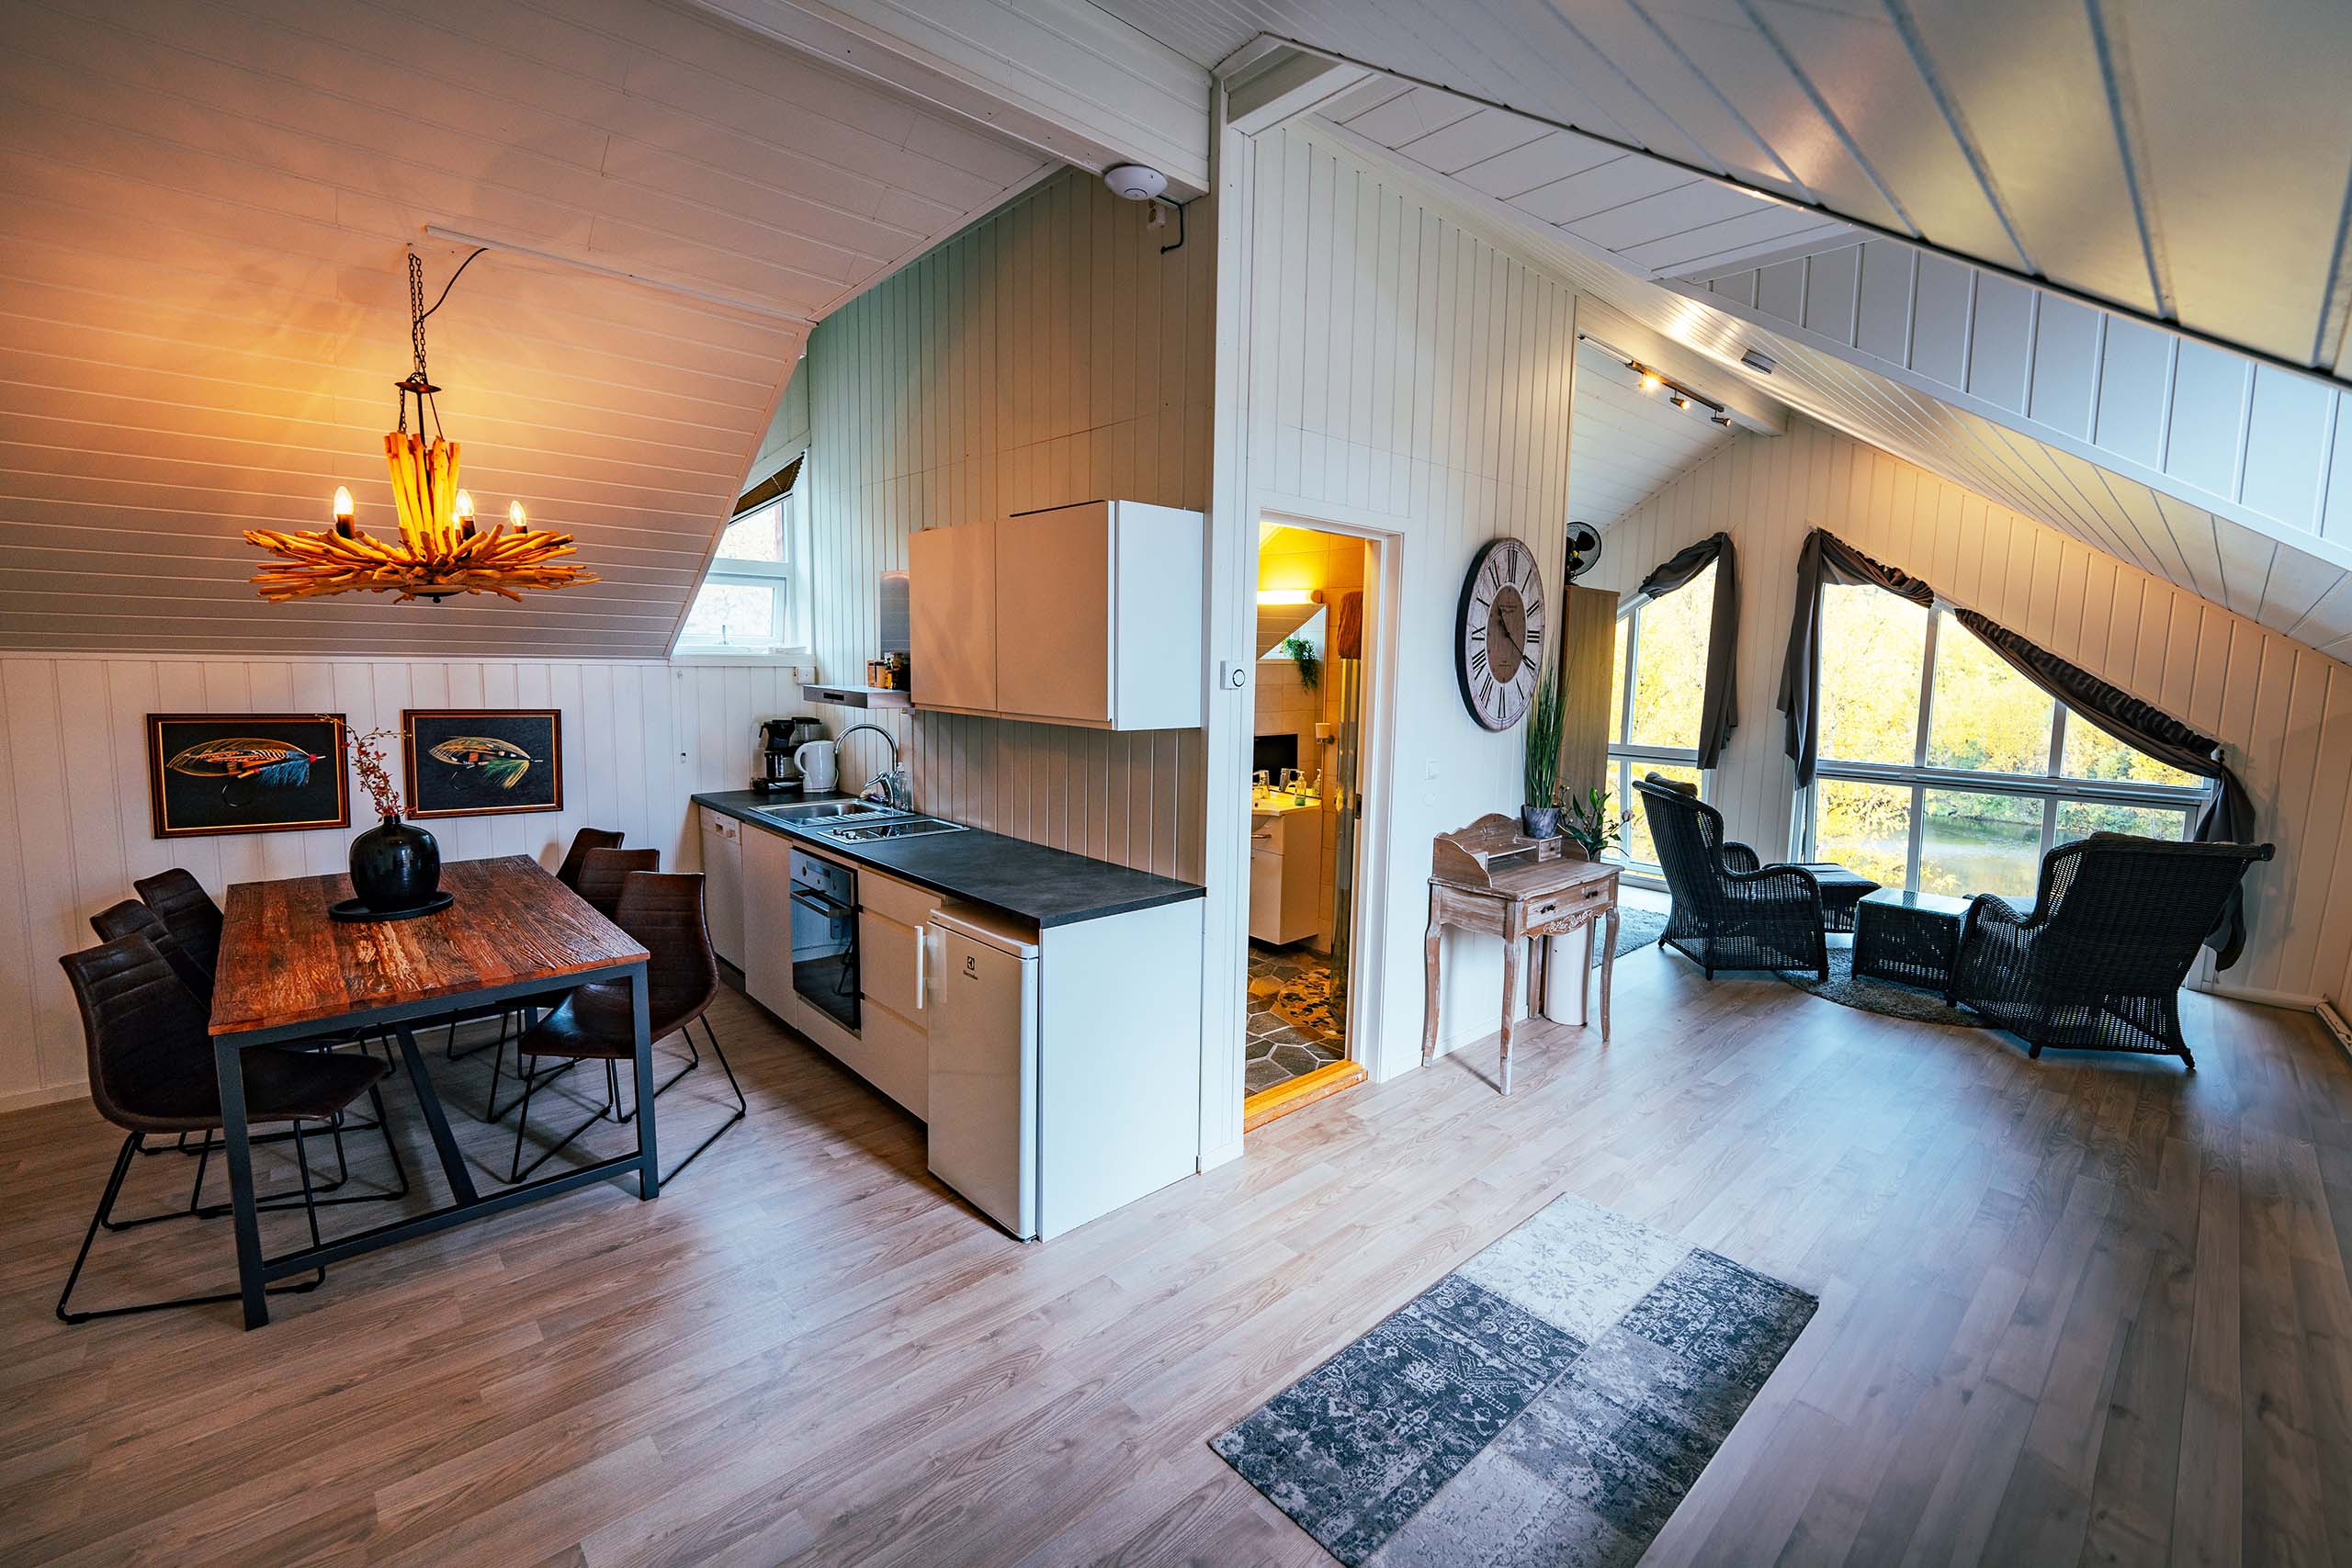 Mollis suite - kitchen + living area